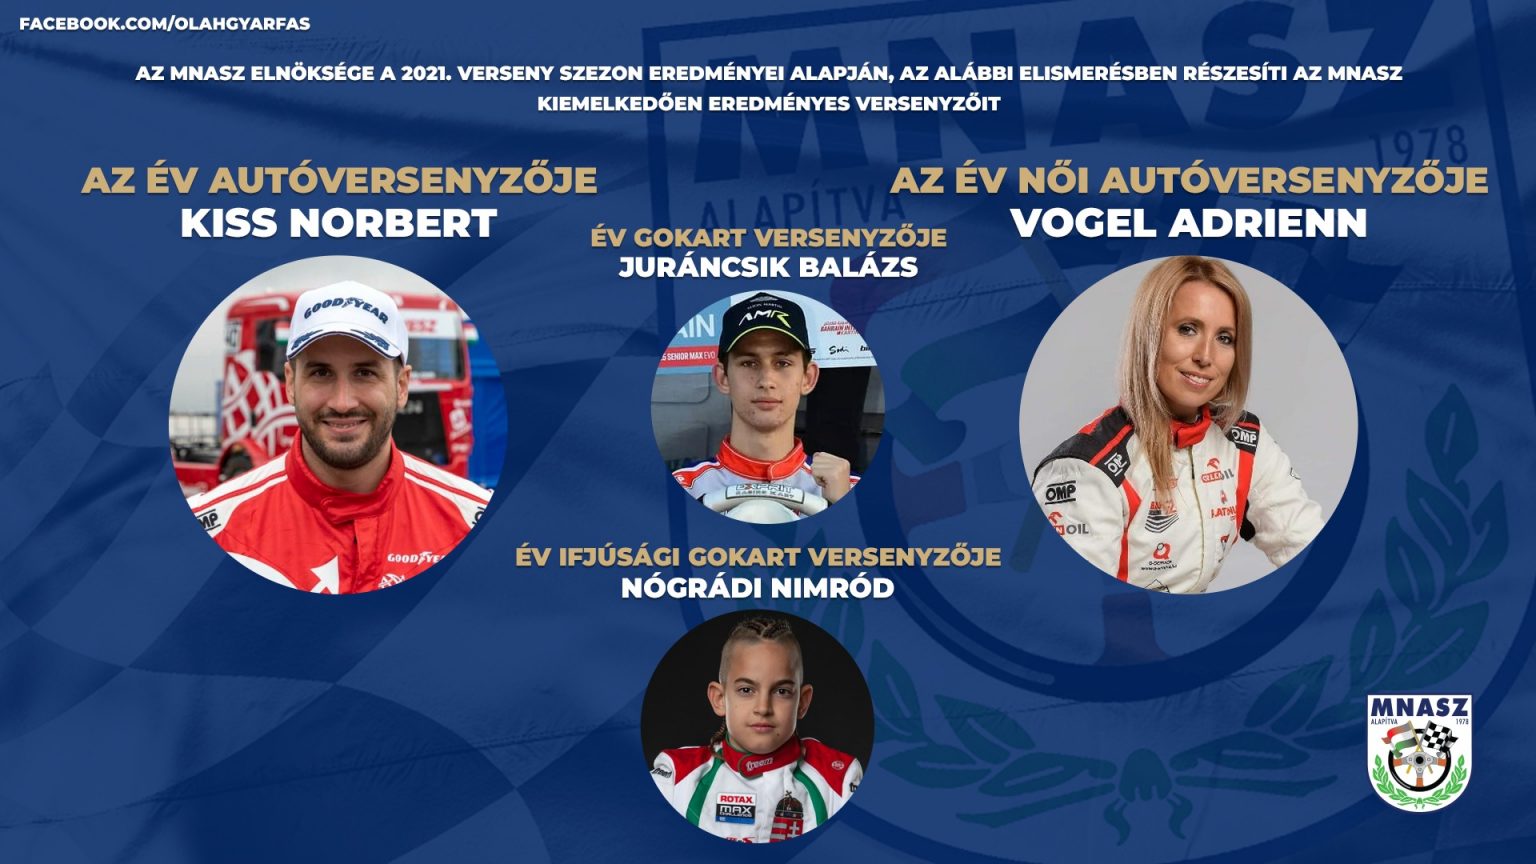 A 2021. év Magyar autóversenyzői